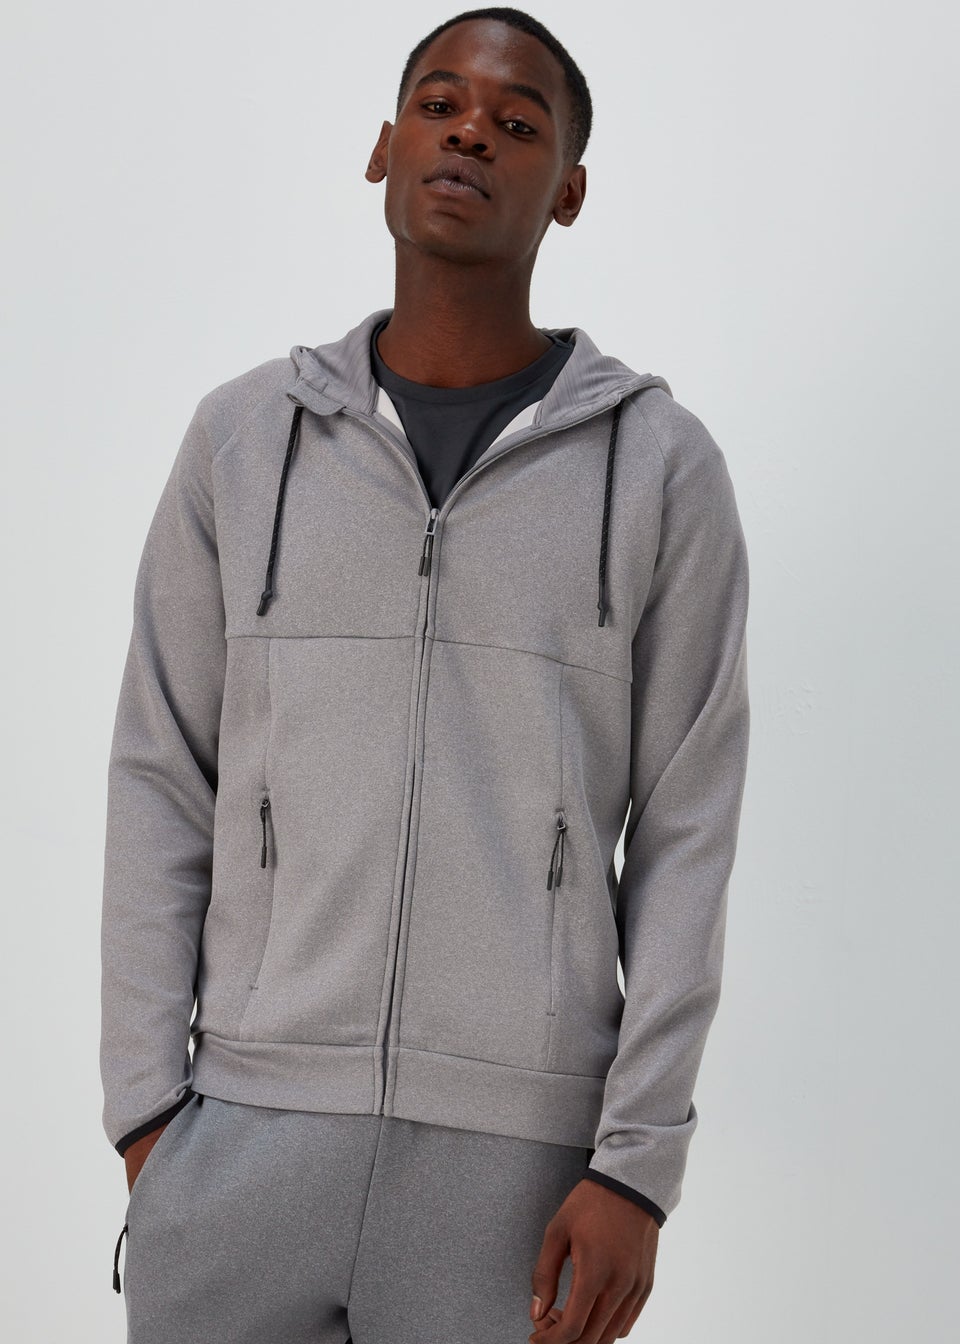 Men's Hoodies & Sweatshirts | Oversized & Zip Up – Matalan